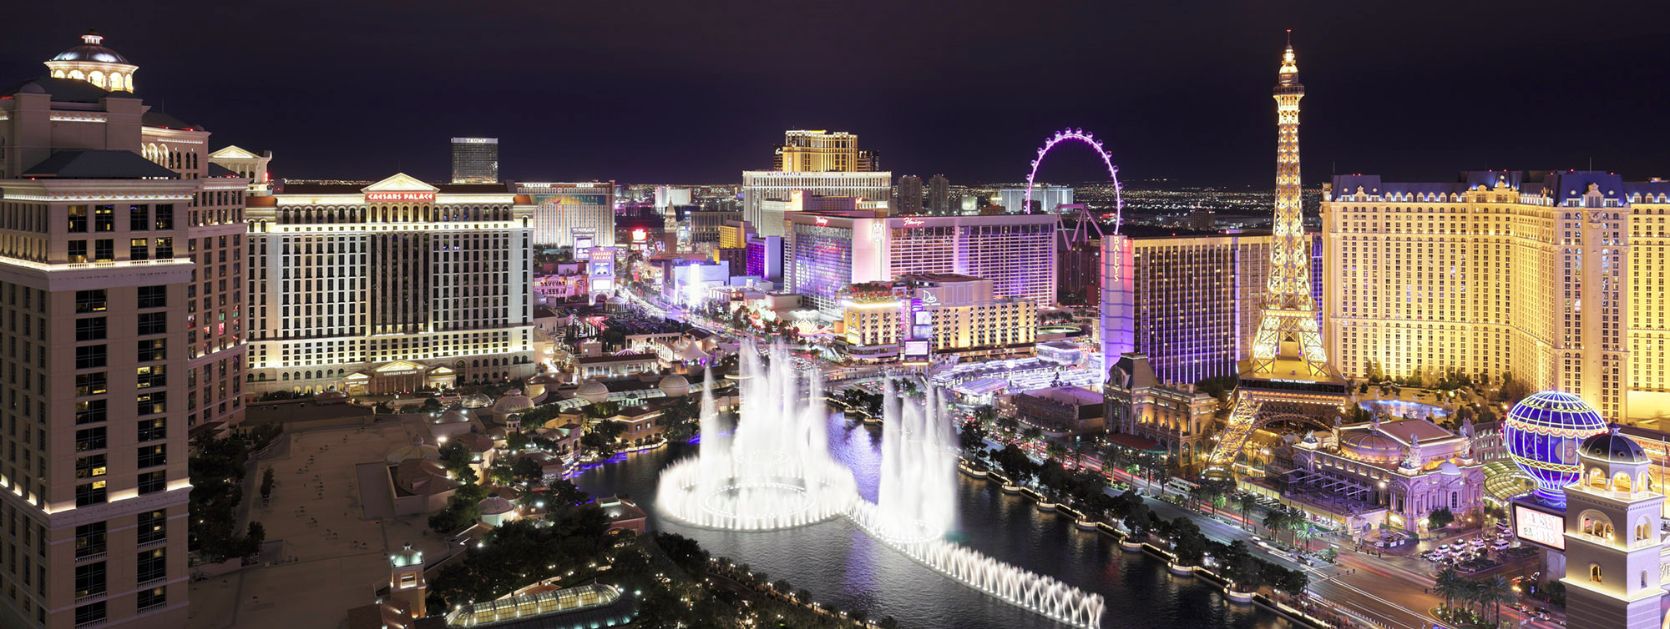 Aerial night picture of Las Vegas